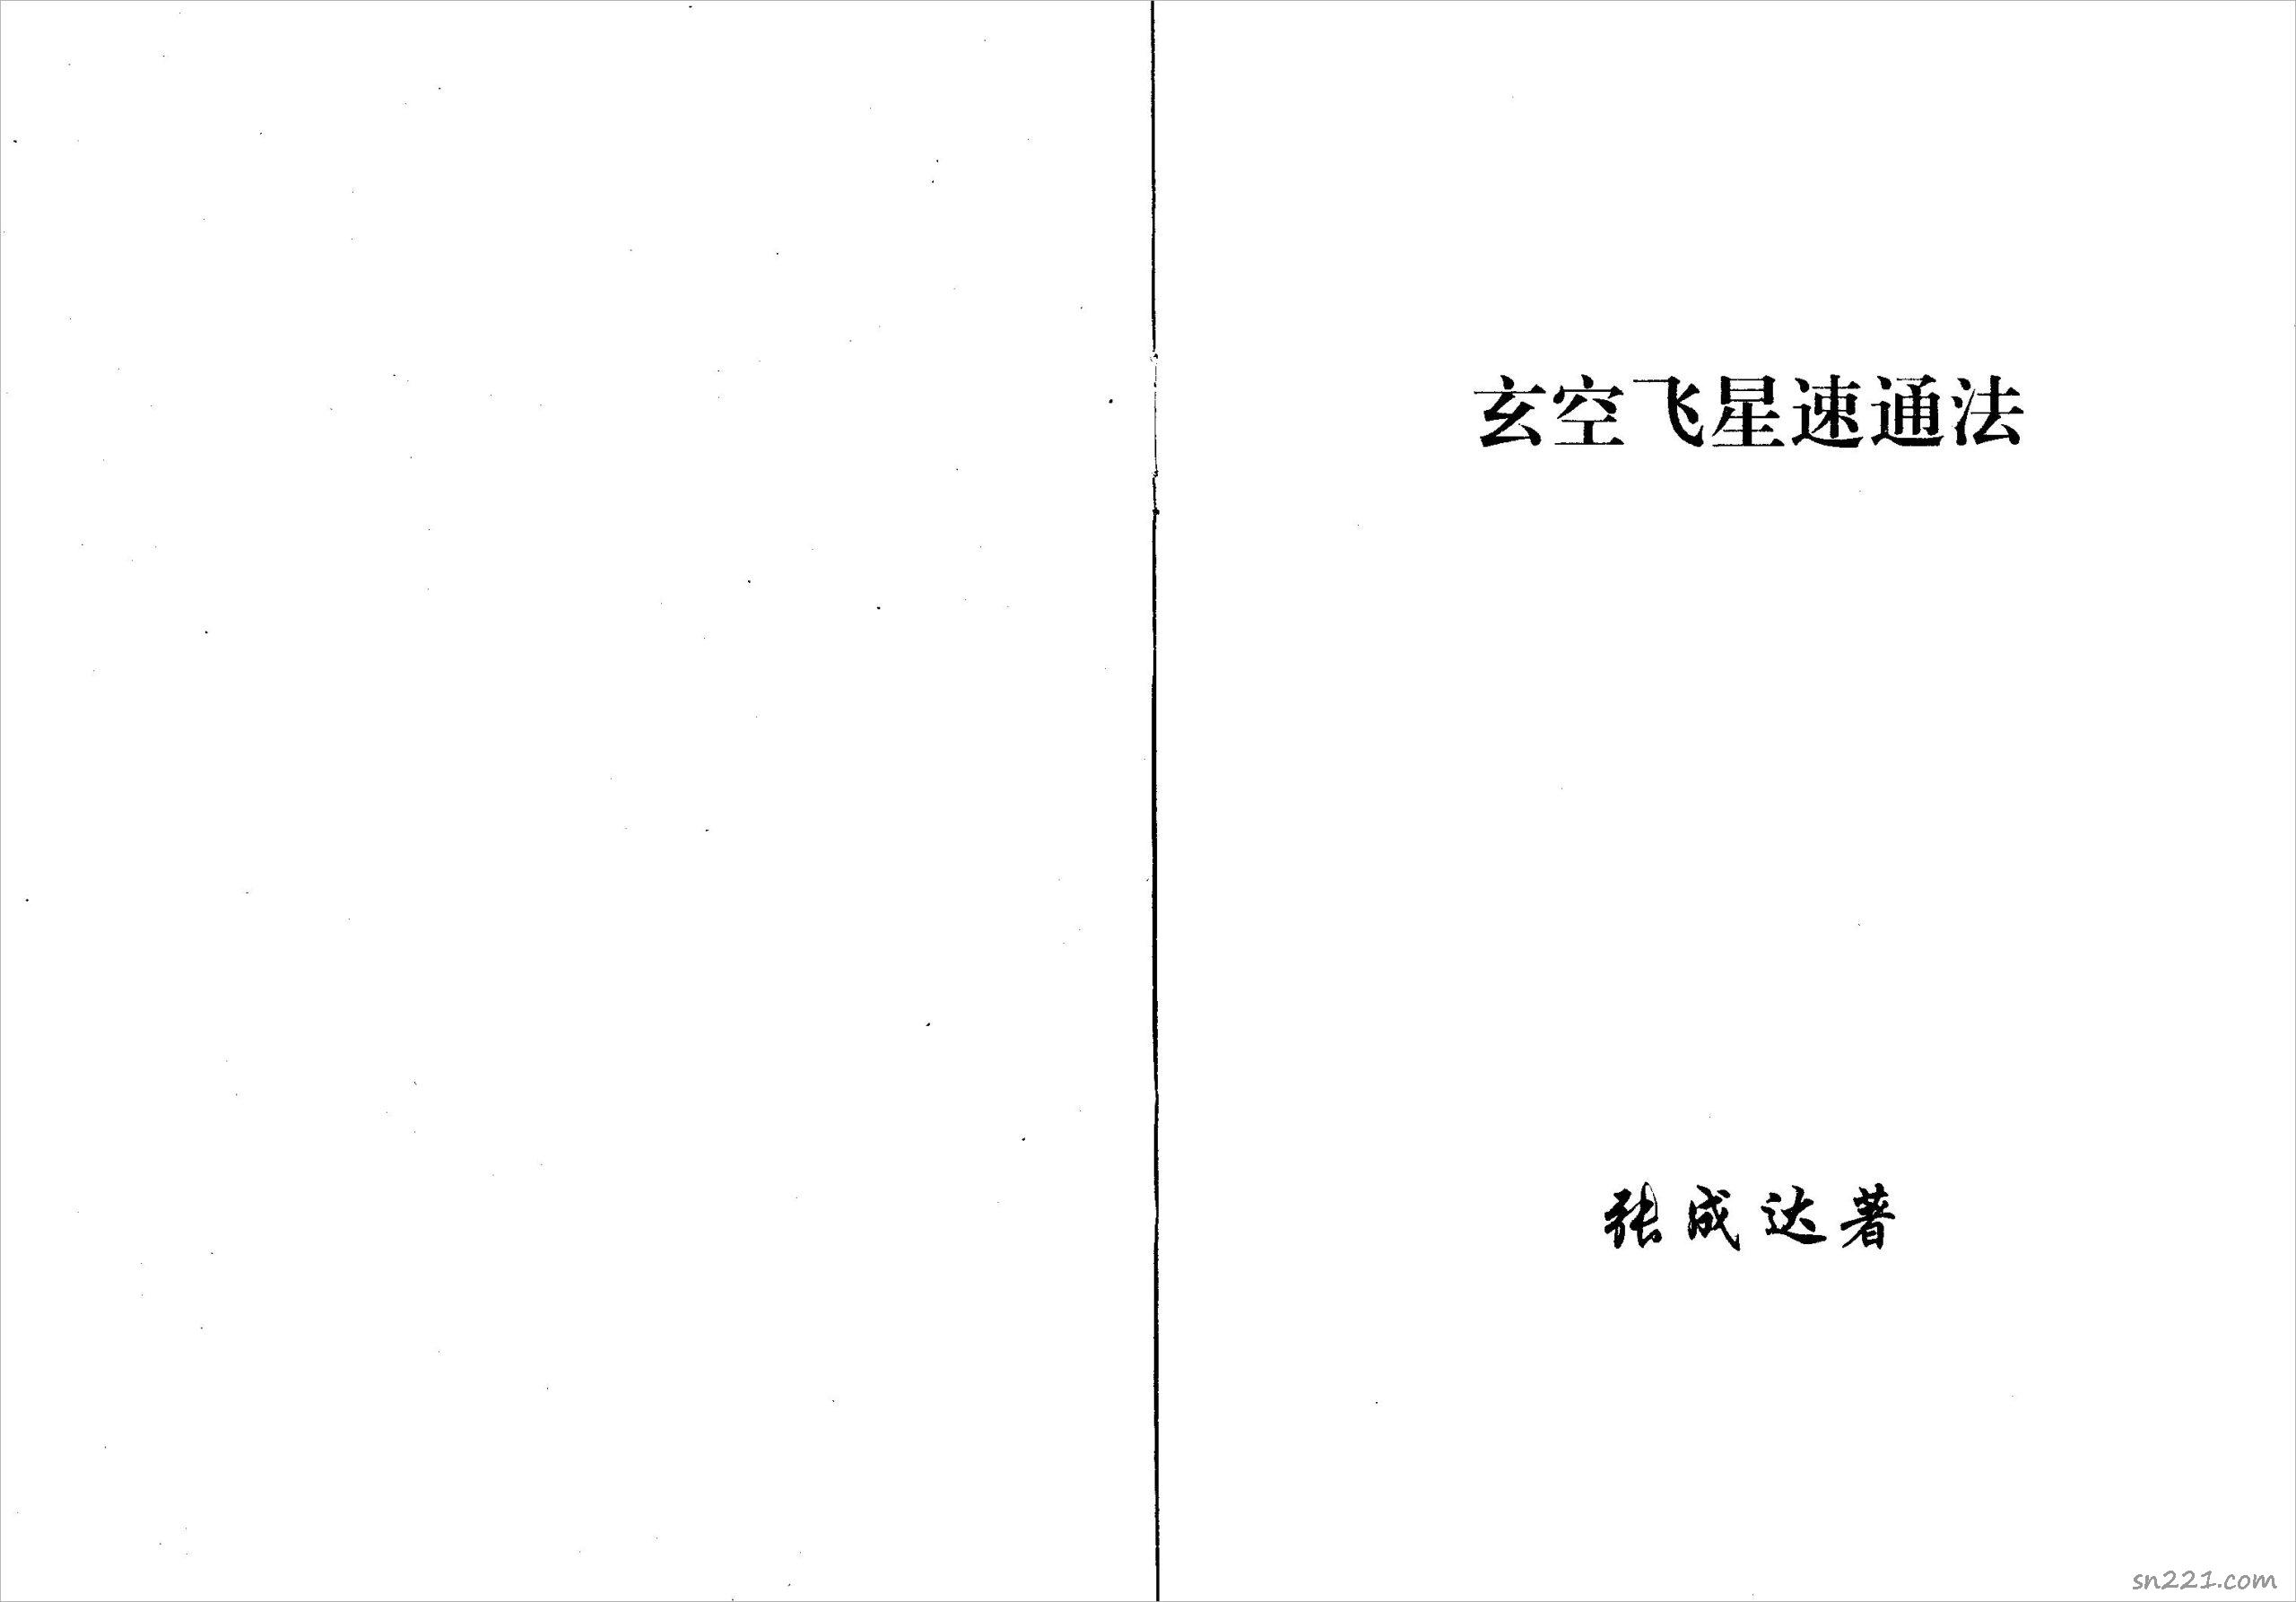 張成達-玄空飛星速通法.pdf